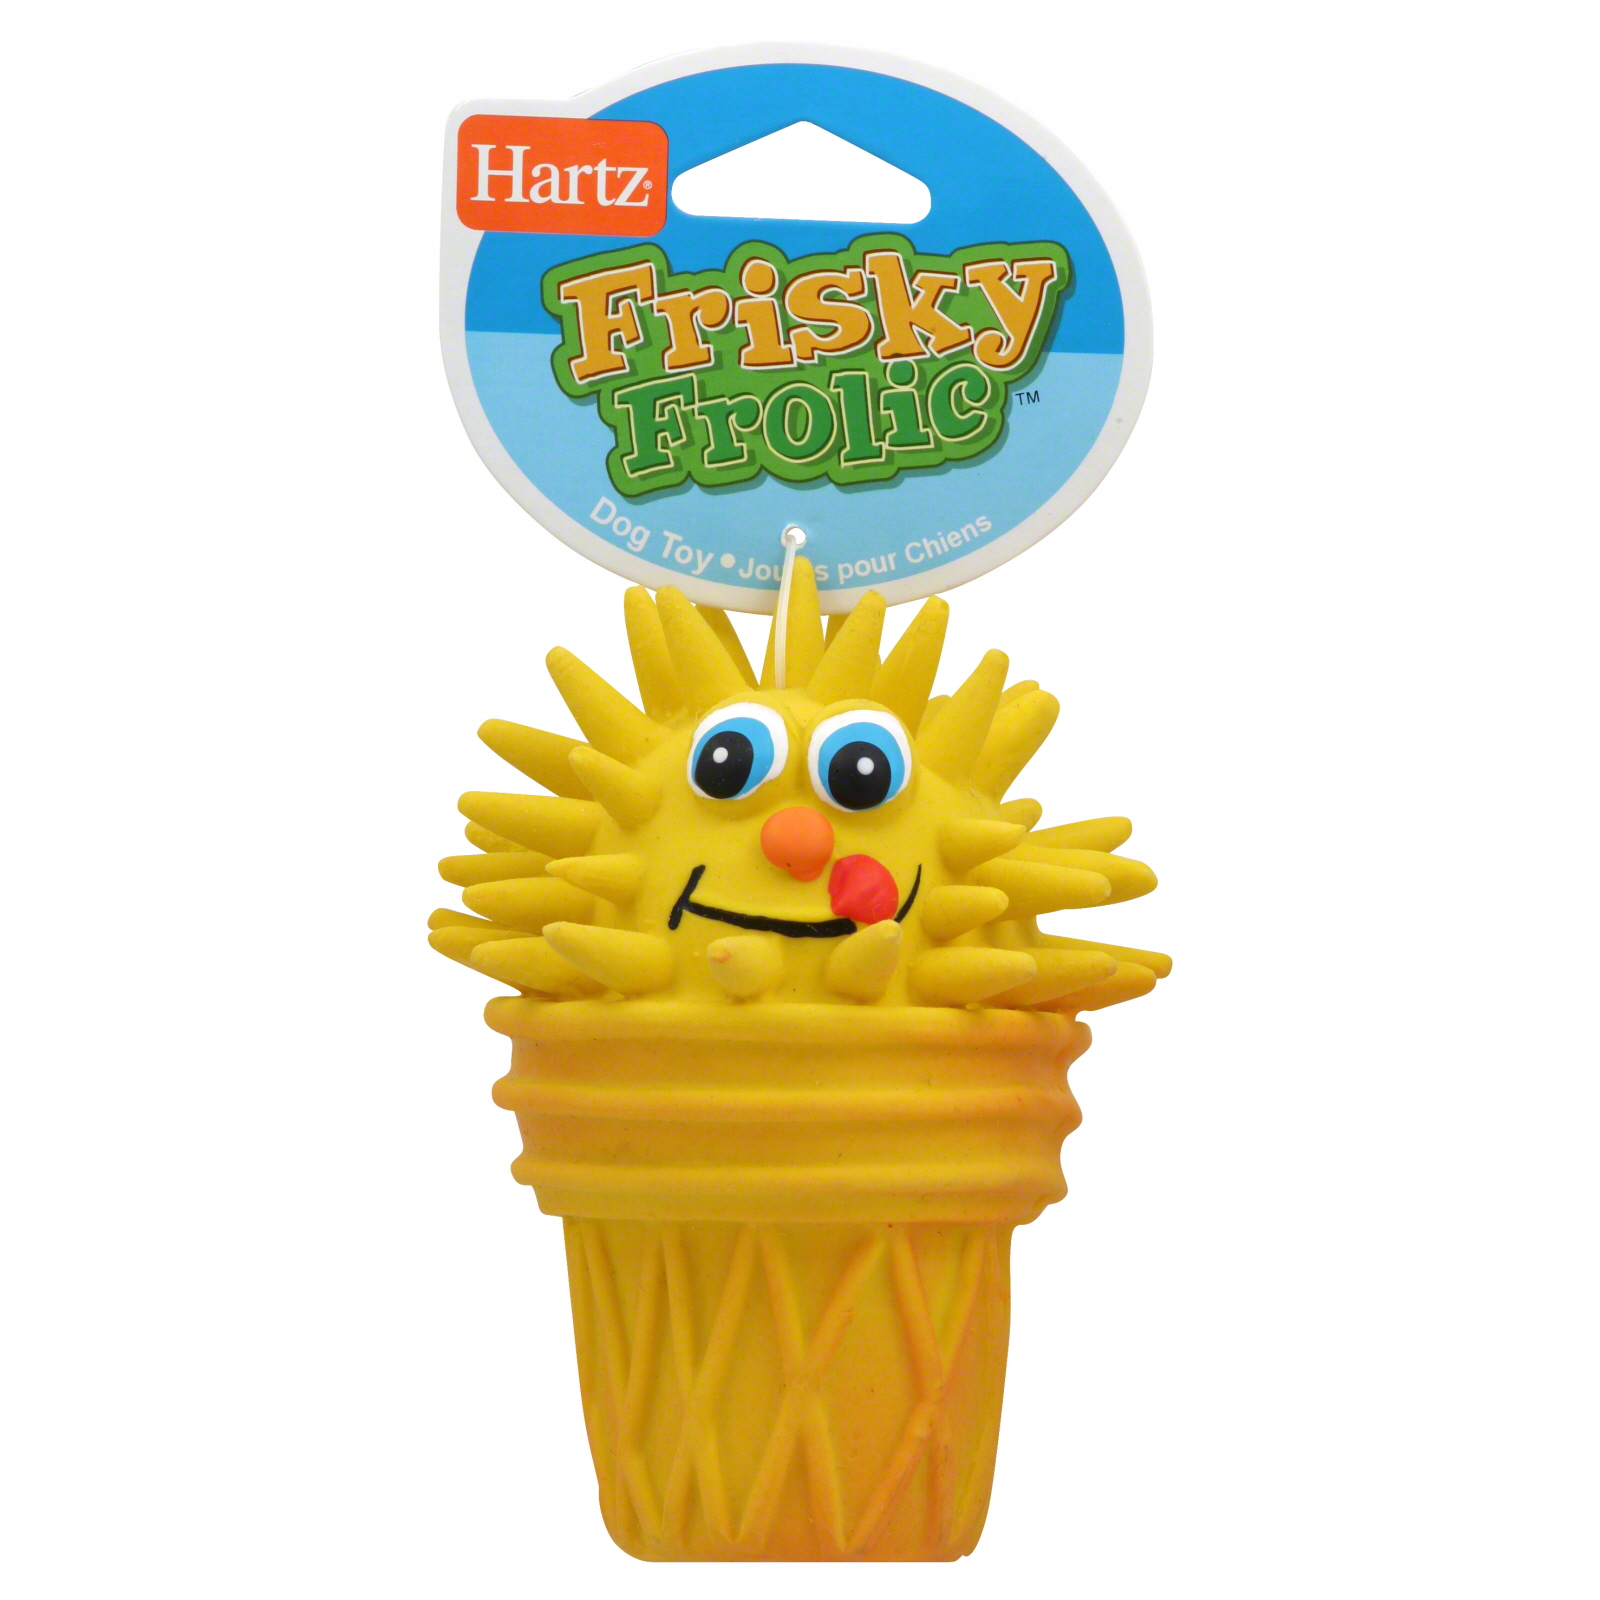 Hartz Dog Toy, Frisky Frolic, 1 toy